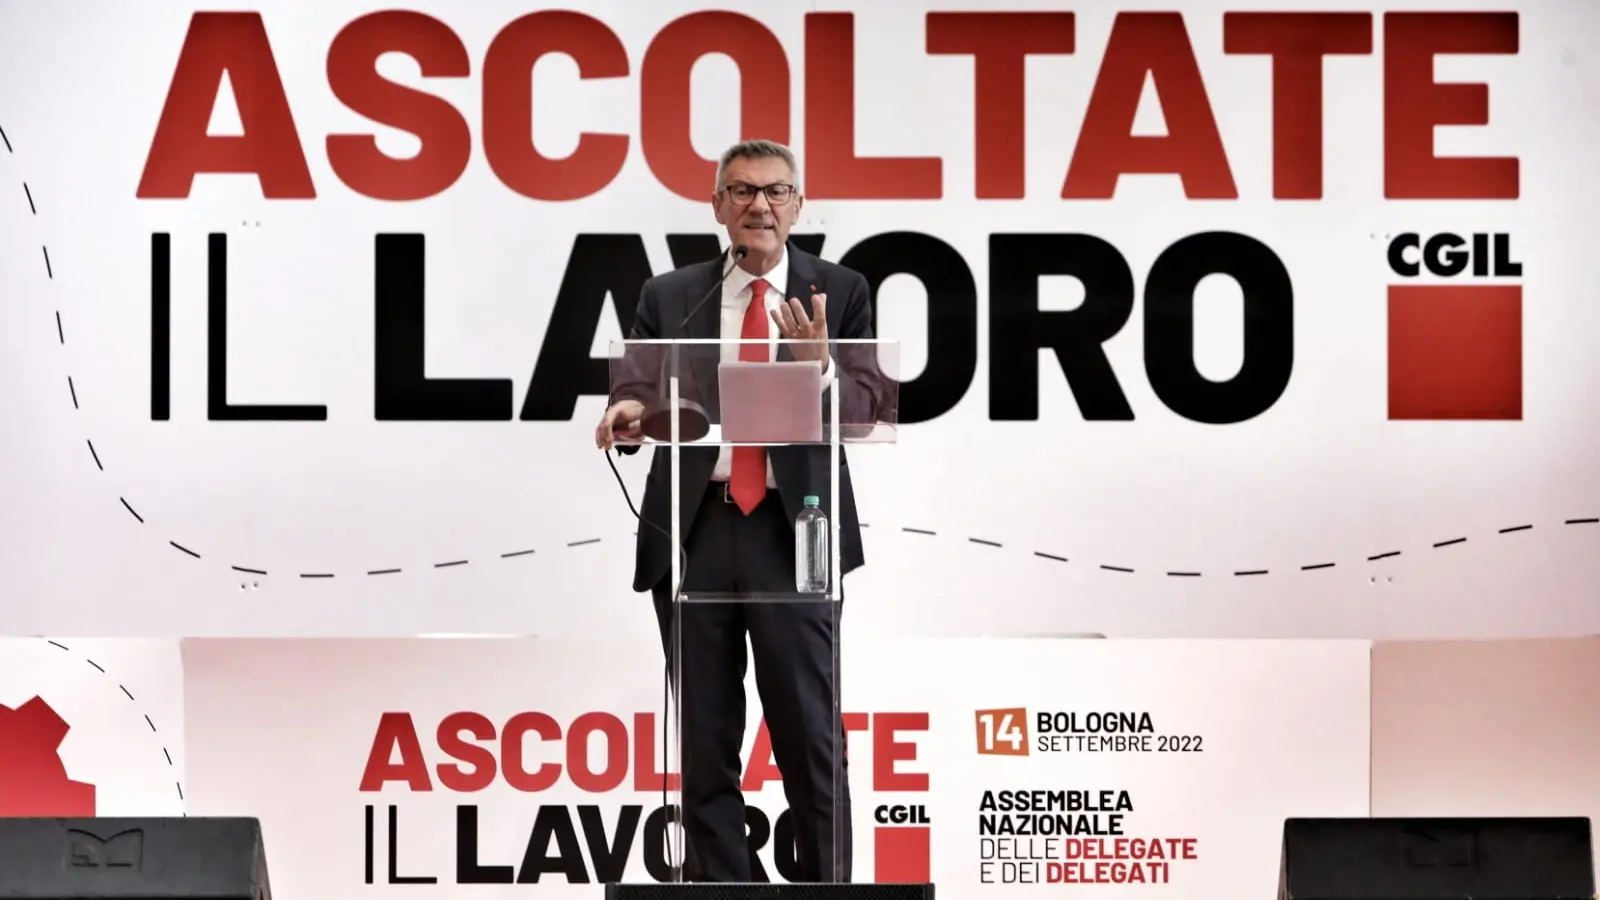 CGIL: “Ascoltate il Lavoro”, assemblea nazionale a Bologna mercoledì 14 settembre. Conclude Landini